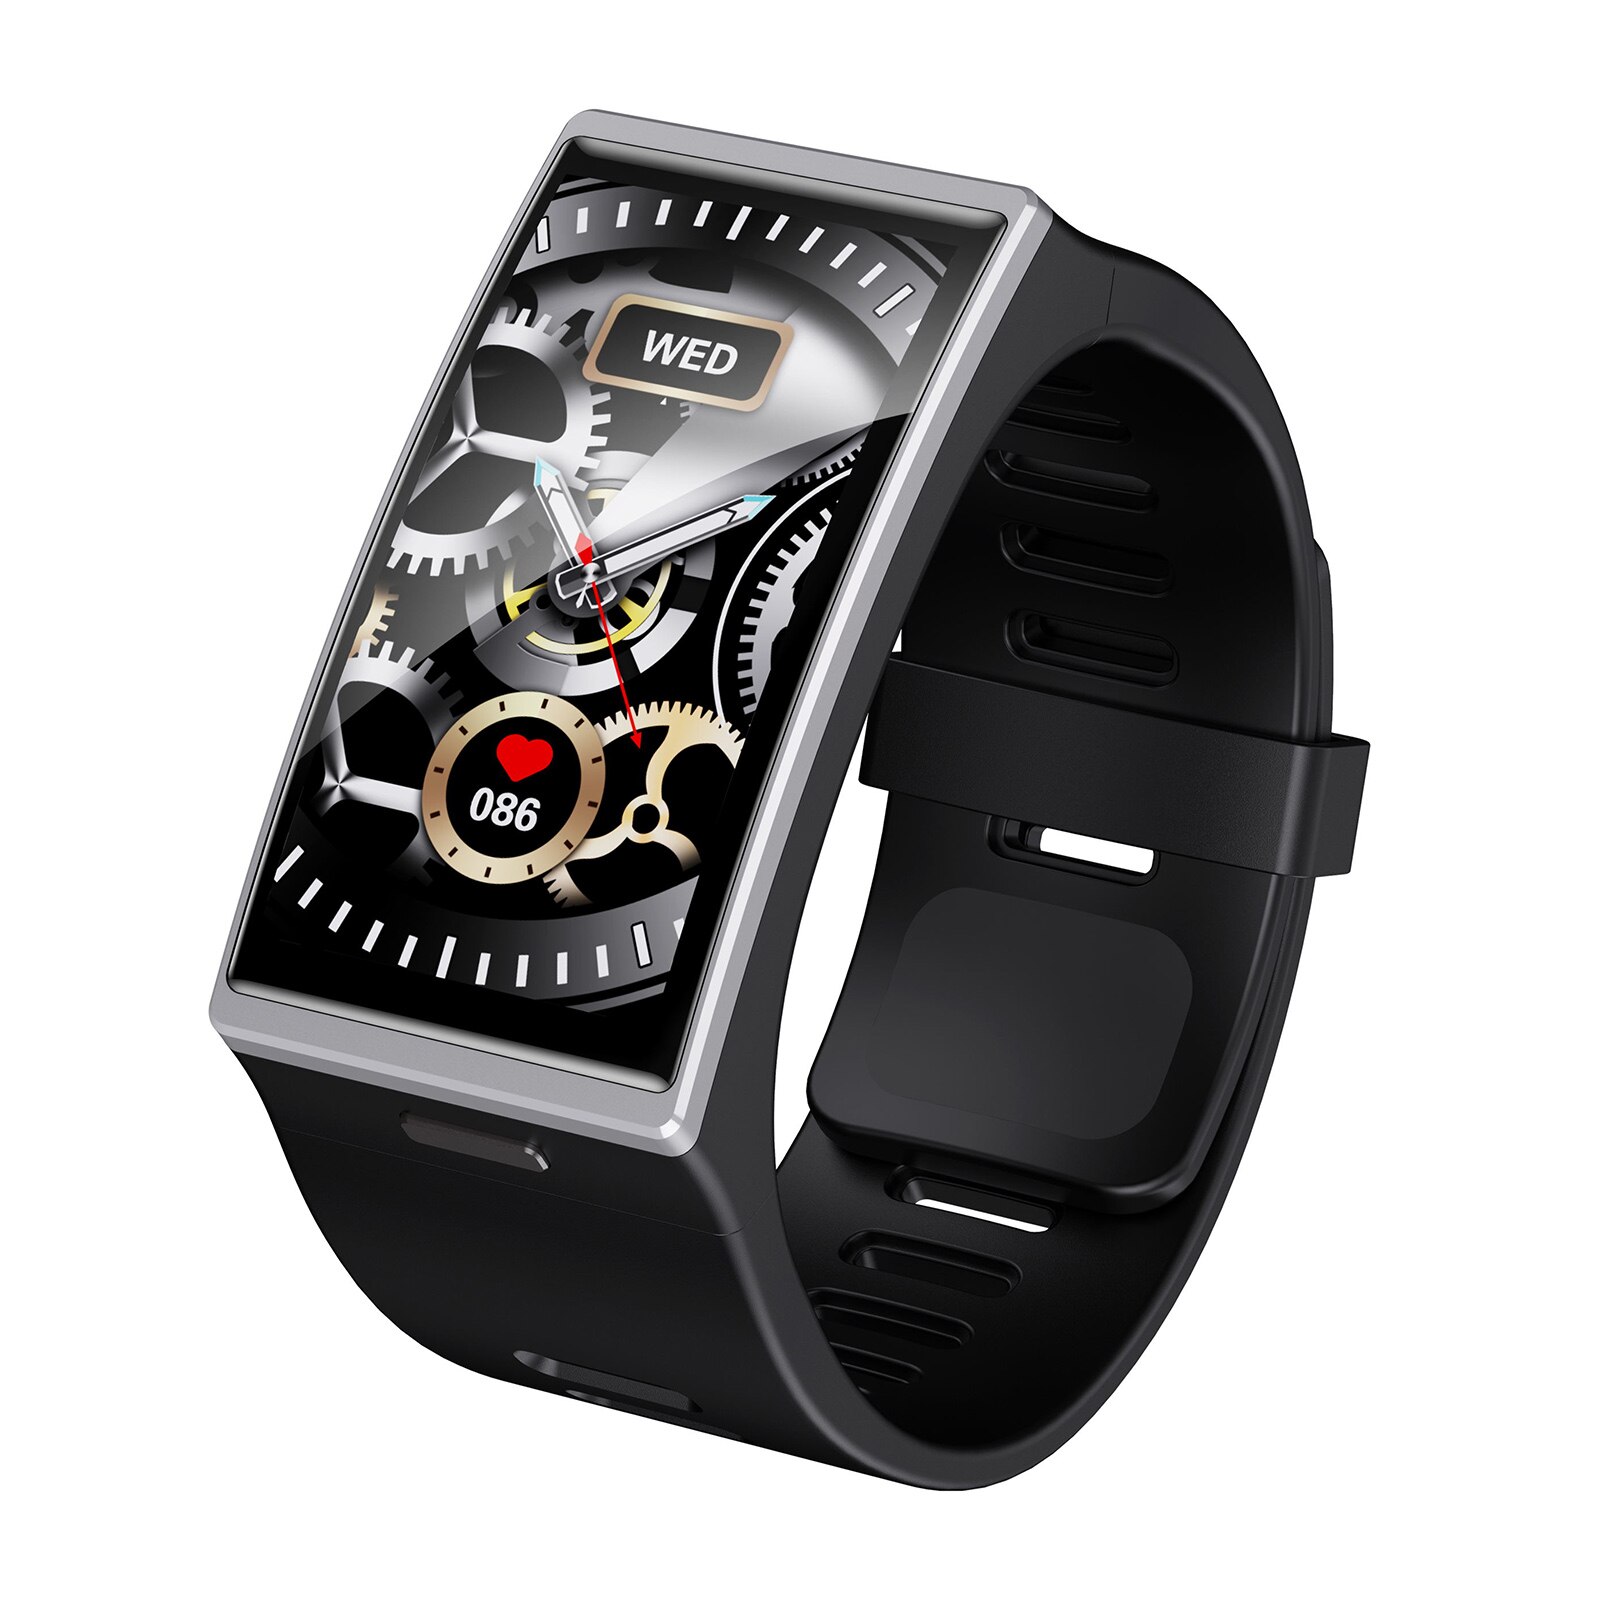 Smart Armband Sport Horloge Tft-scherm Fitness Tracker Hartslag/Bloeddrukmeter Meerdere Sporten Modus Smart Armband